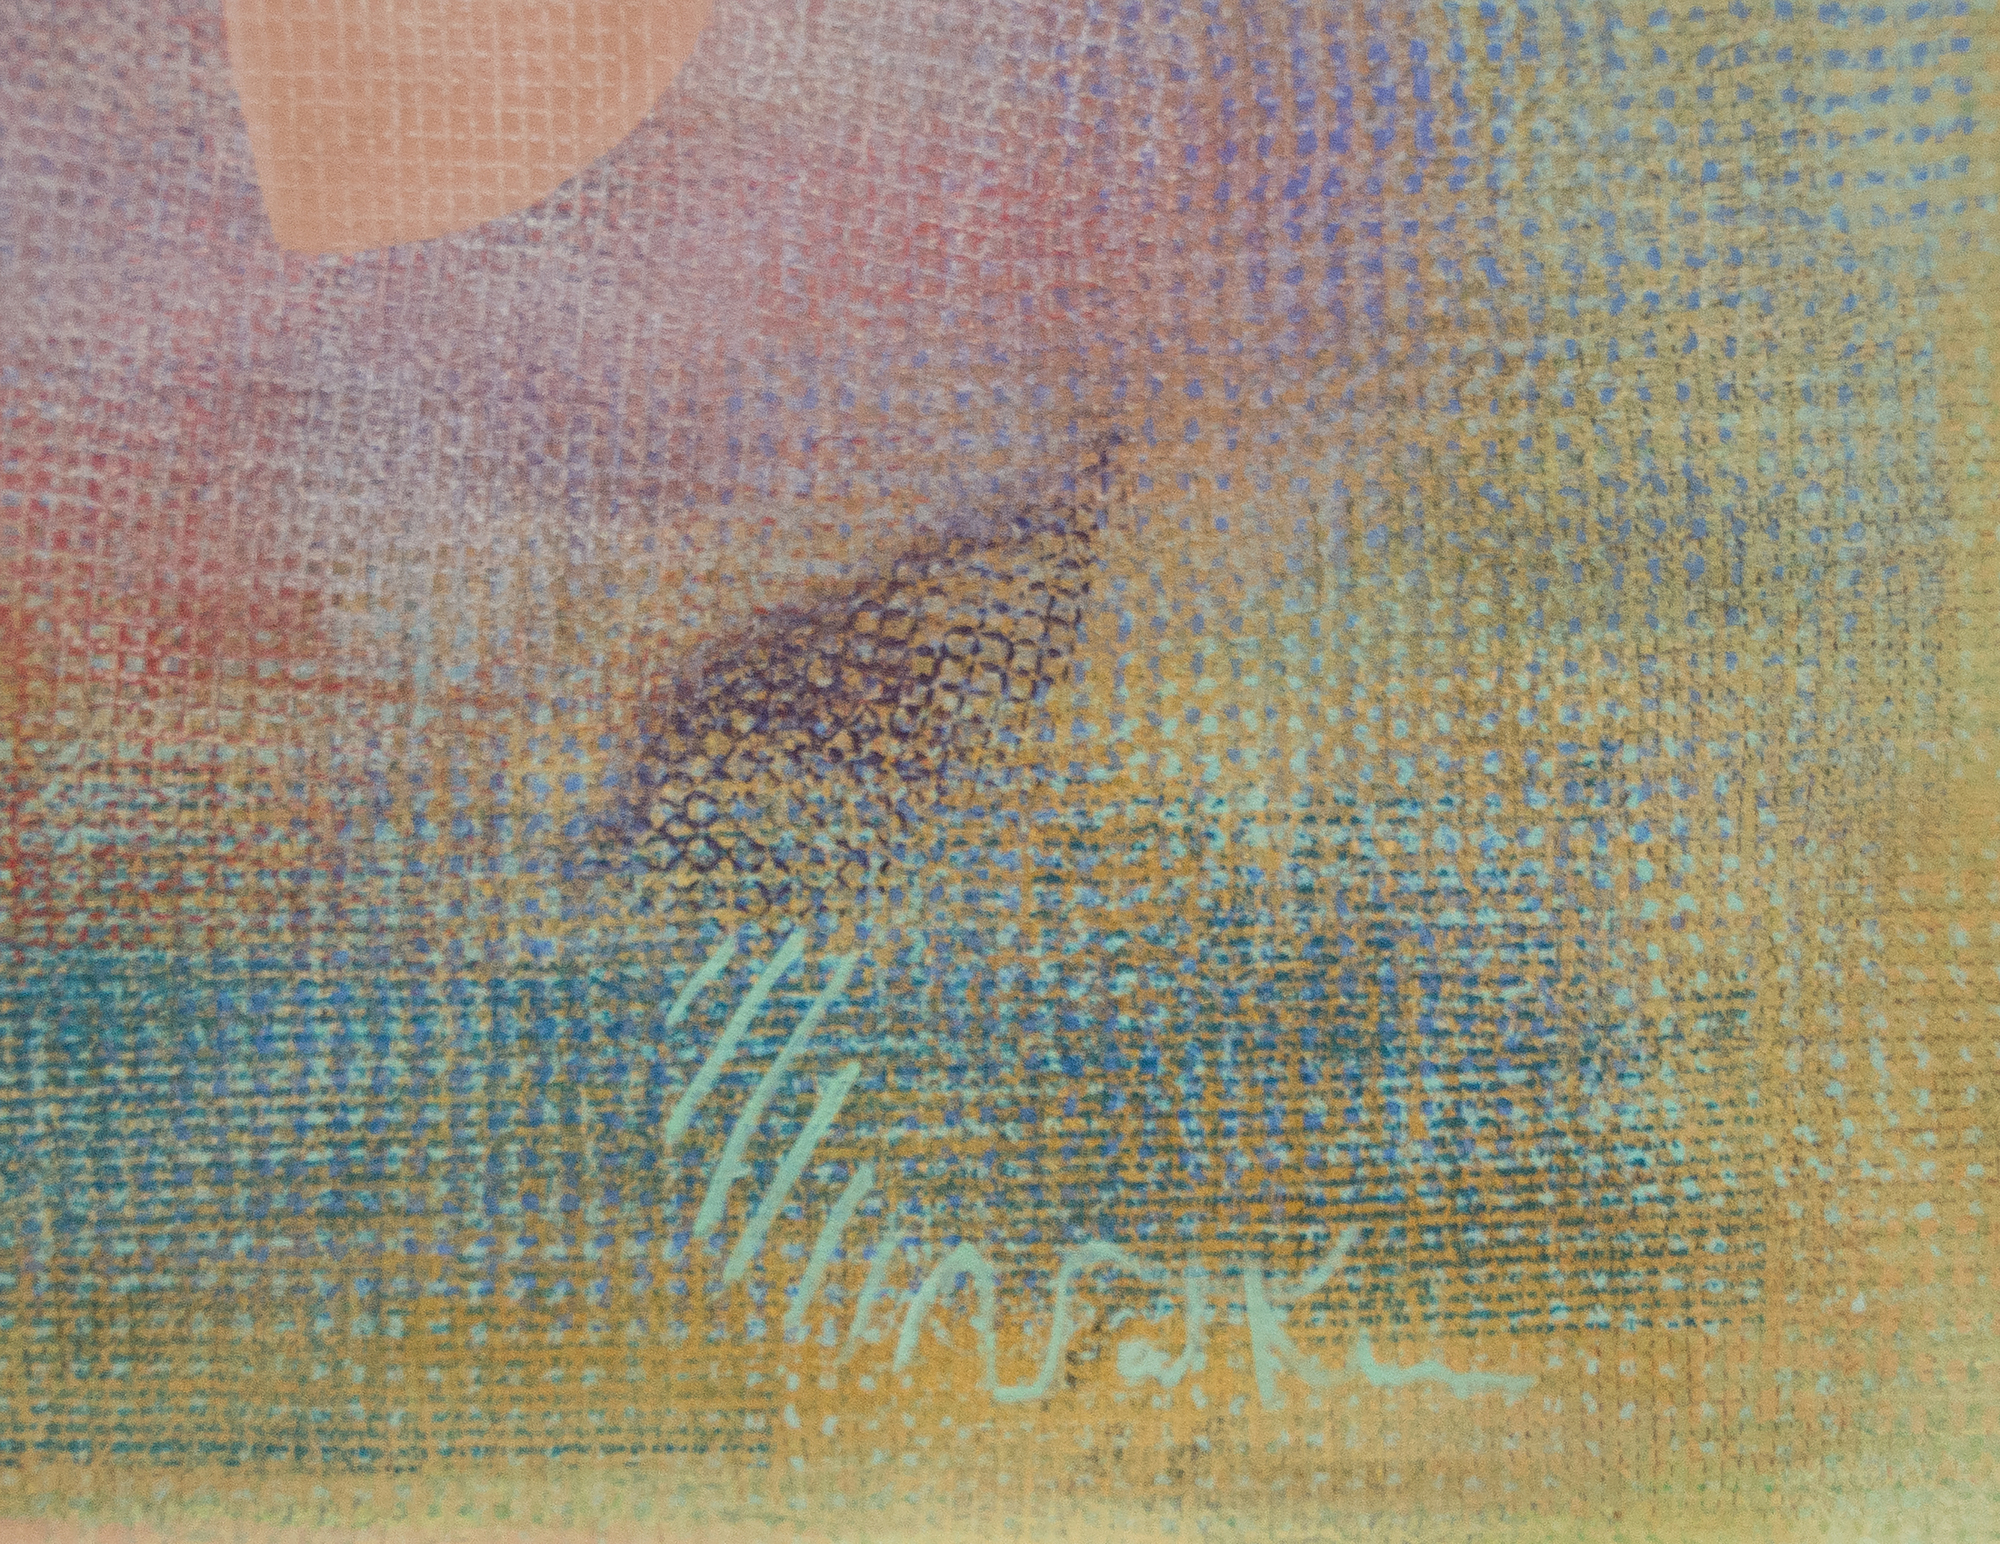 ROBERT NATKIN - Sin título - acrílico sobre lienzo - 60 x 60 in.